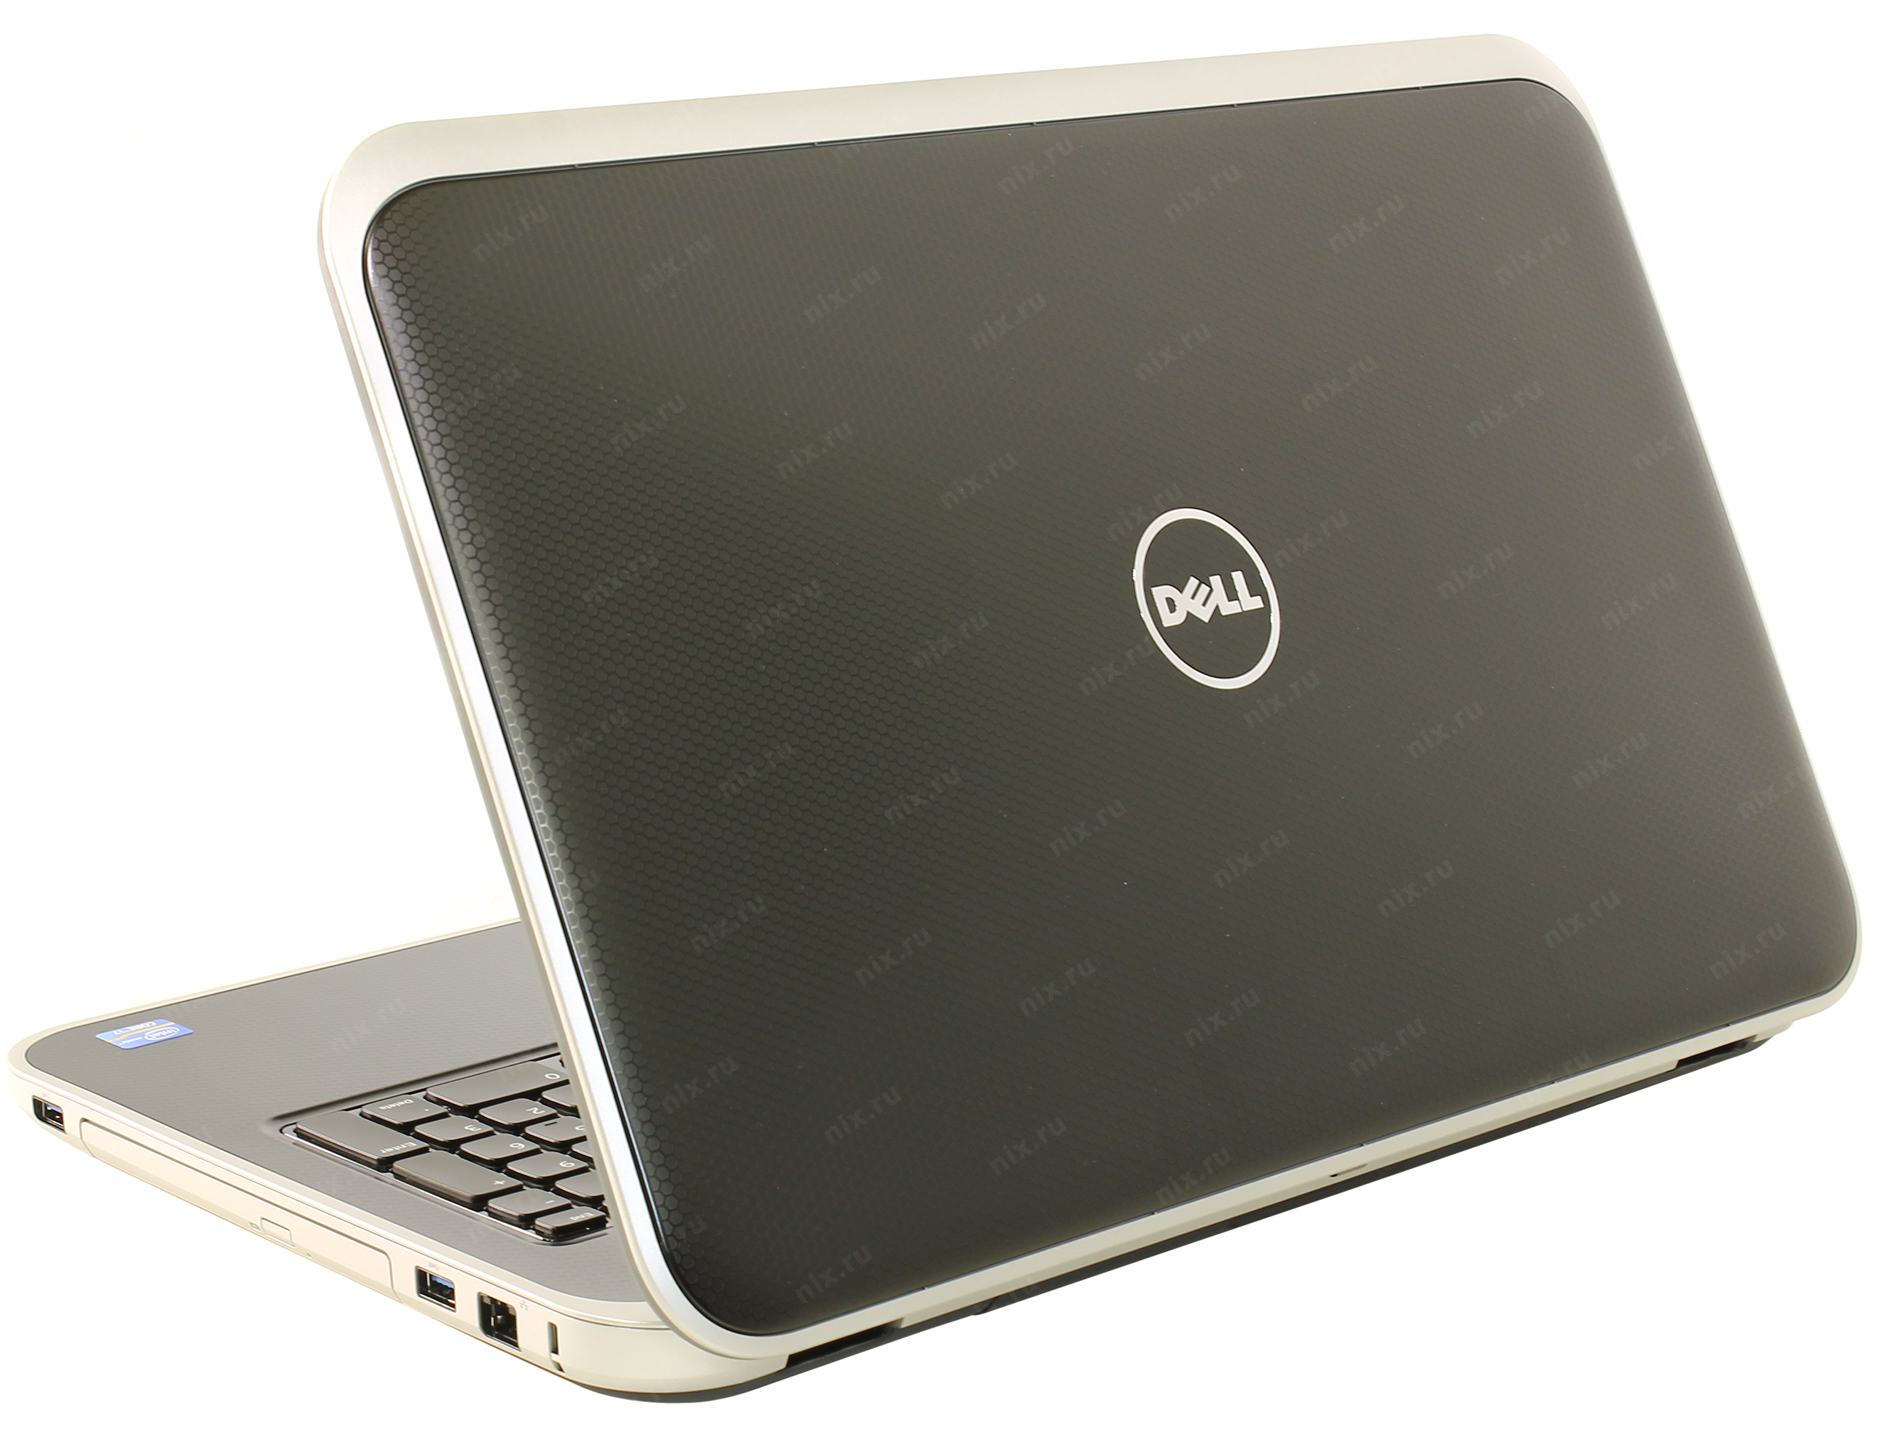 Купить Ноутбук Dell Inspiron 7720